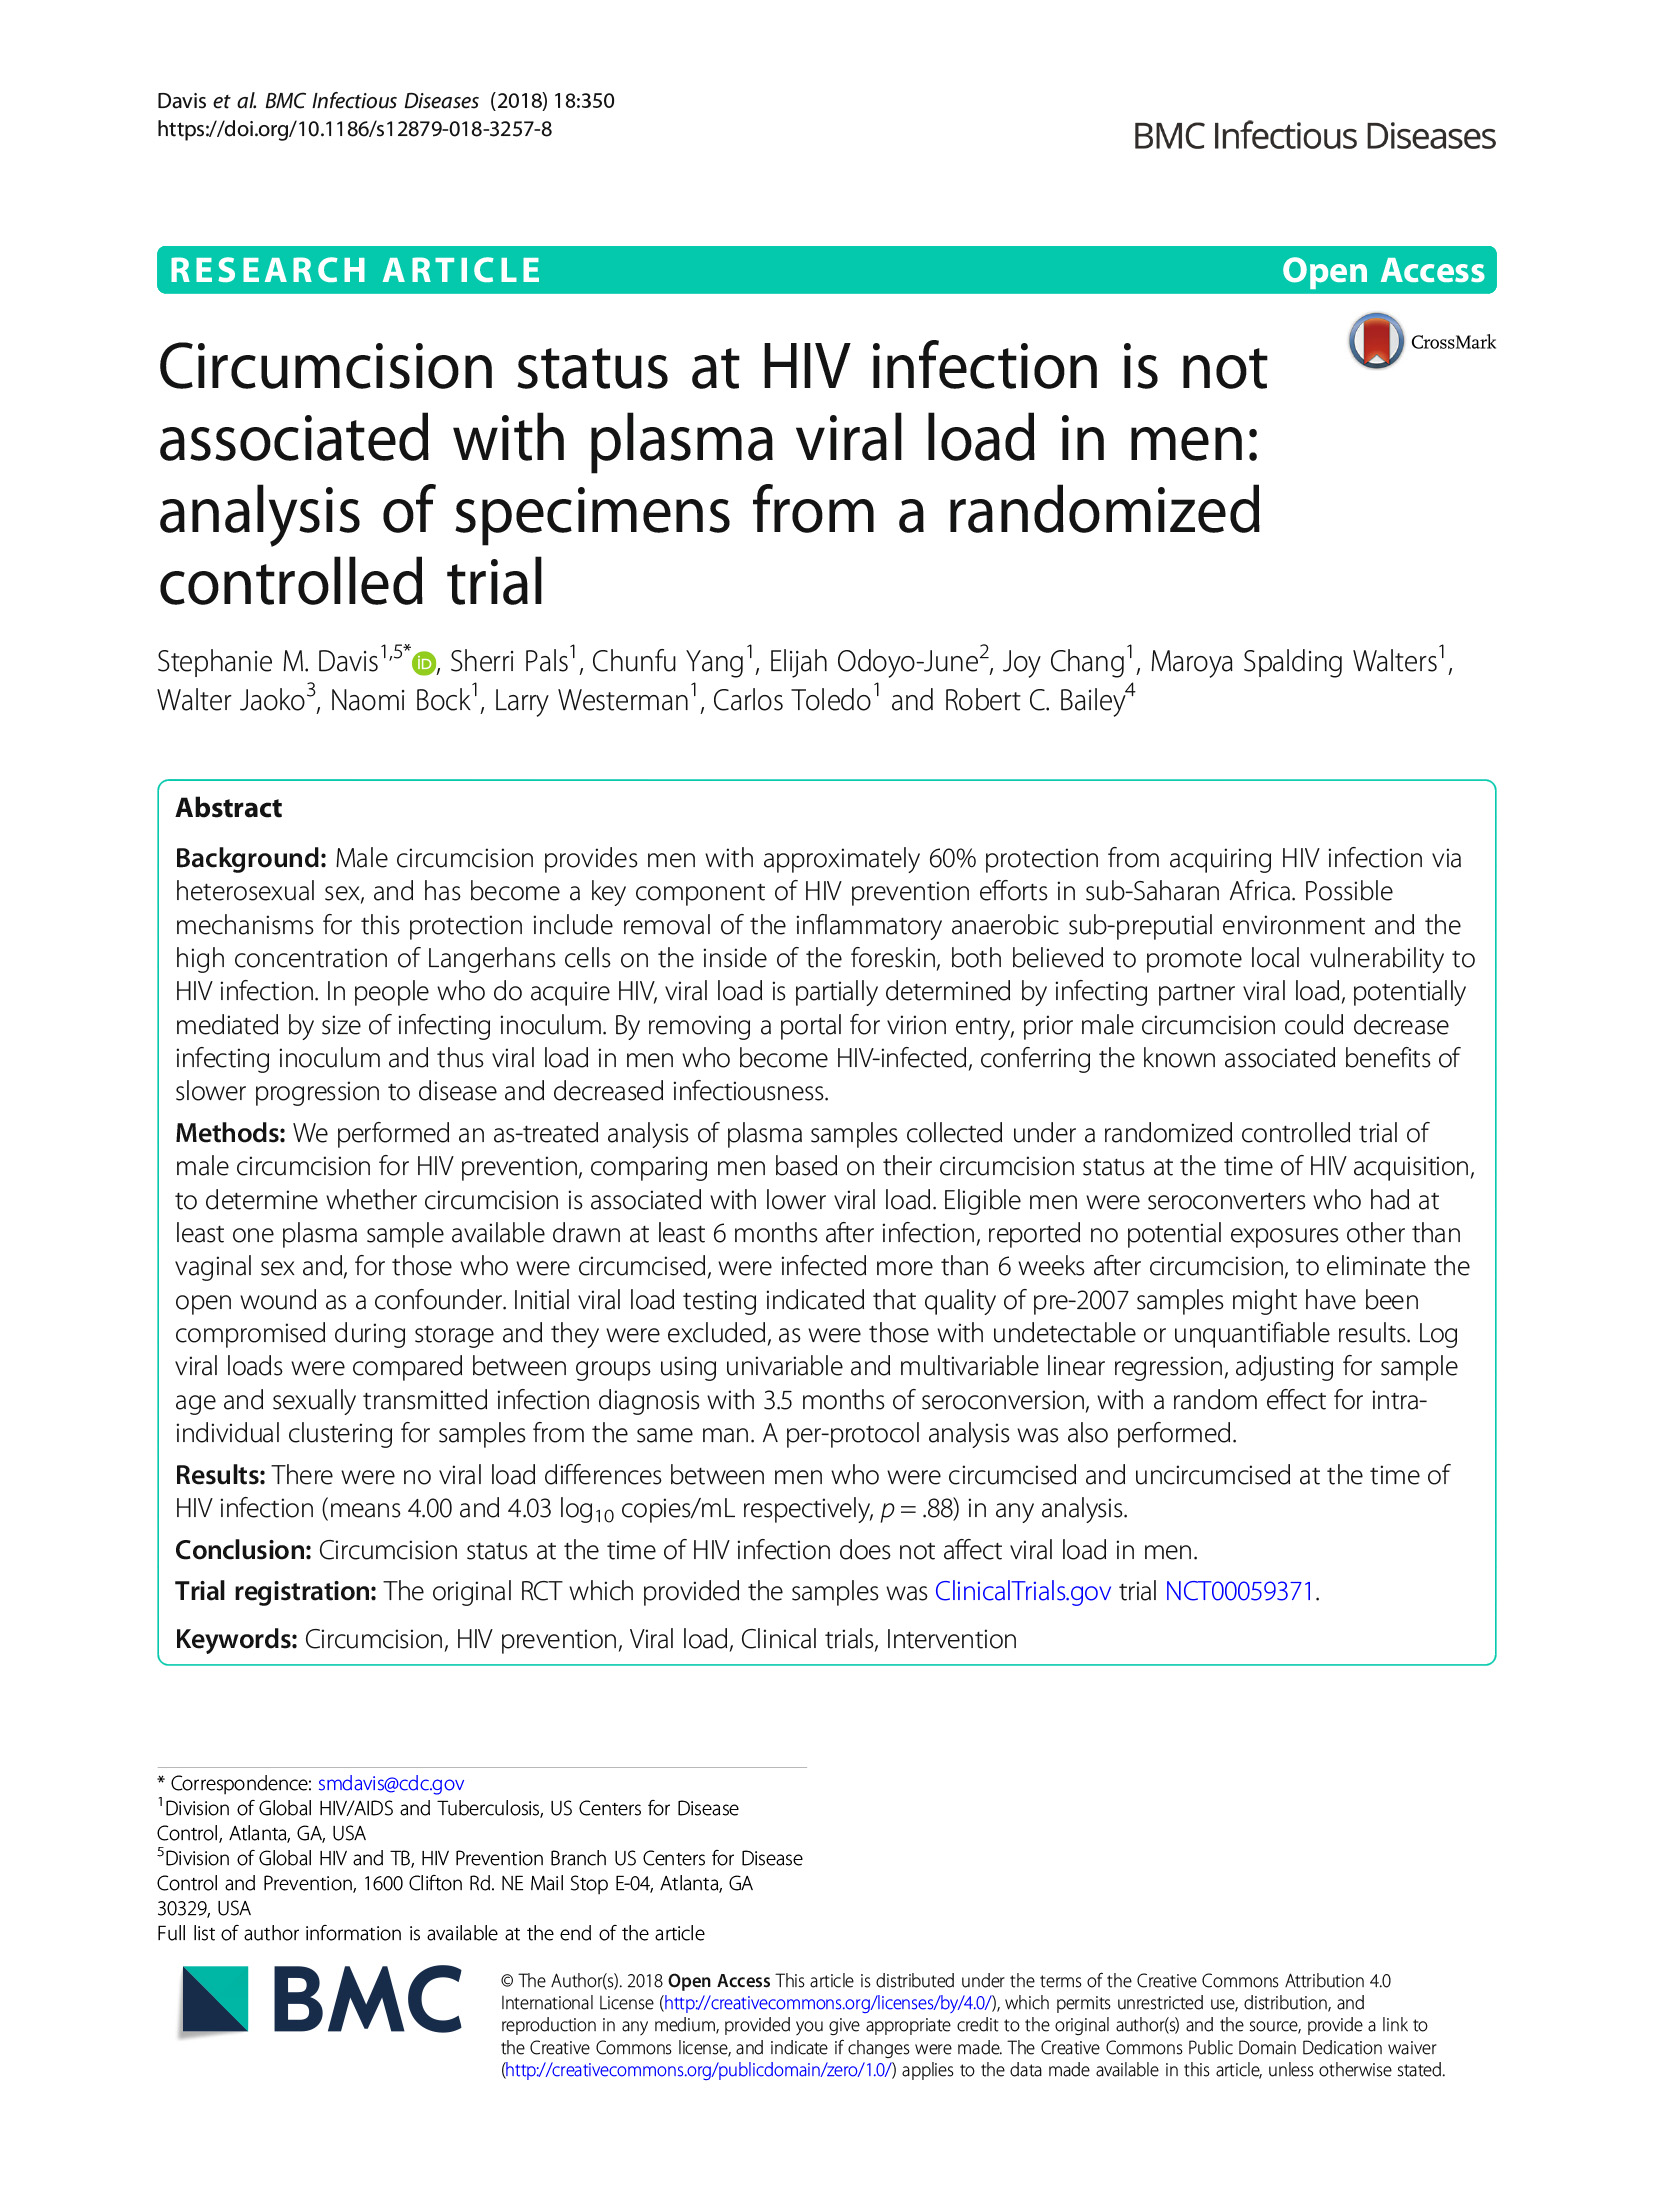 O estado da circuncisão na infeção pelo VIH não está associado à carga viral plasmática nos homens: Análise de Espécimes de um Estudo Aleatório Controlado - capa